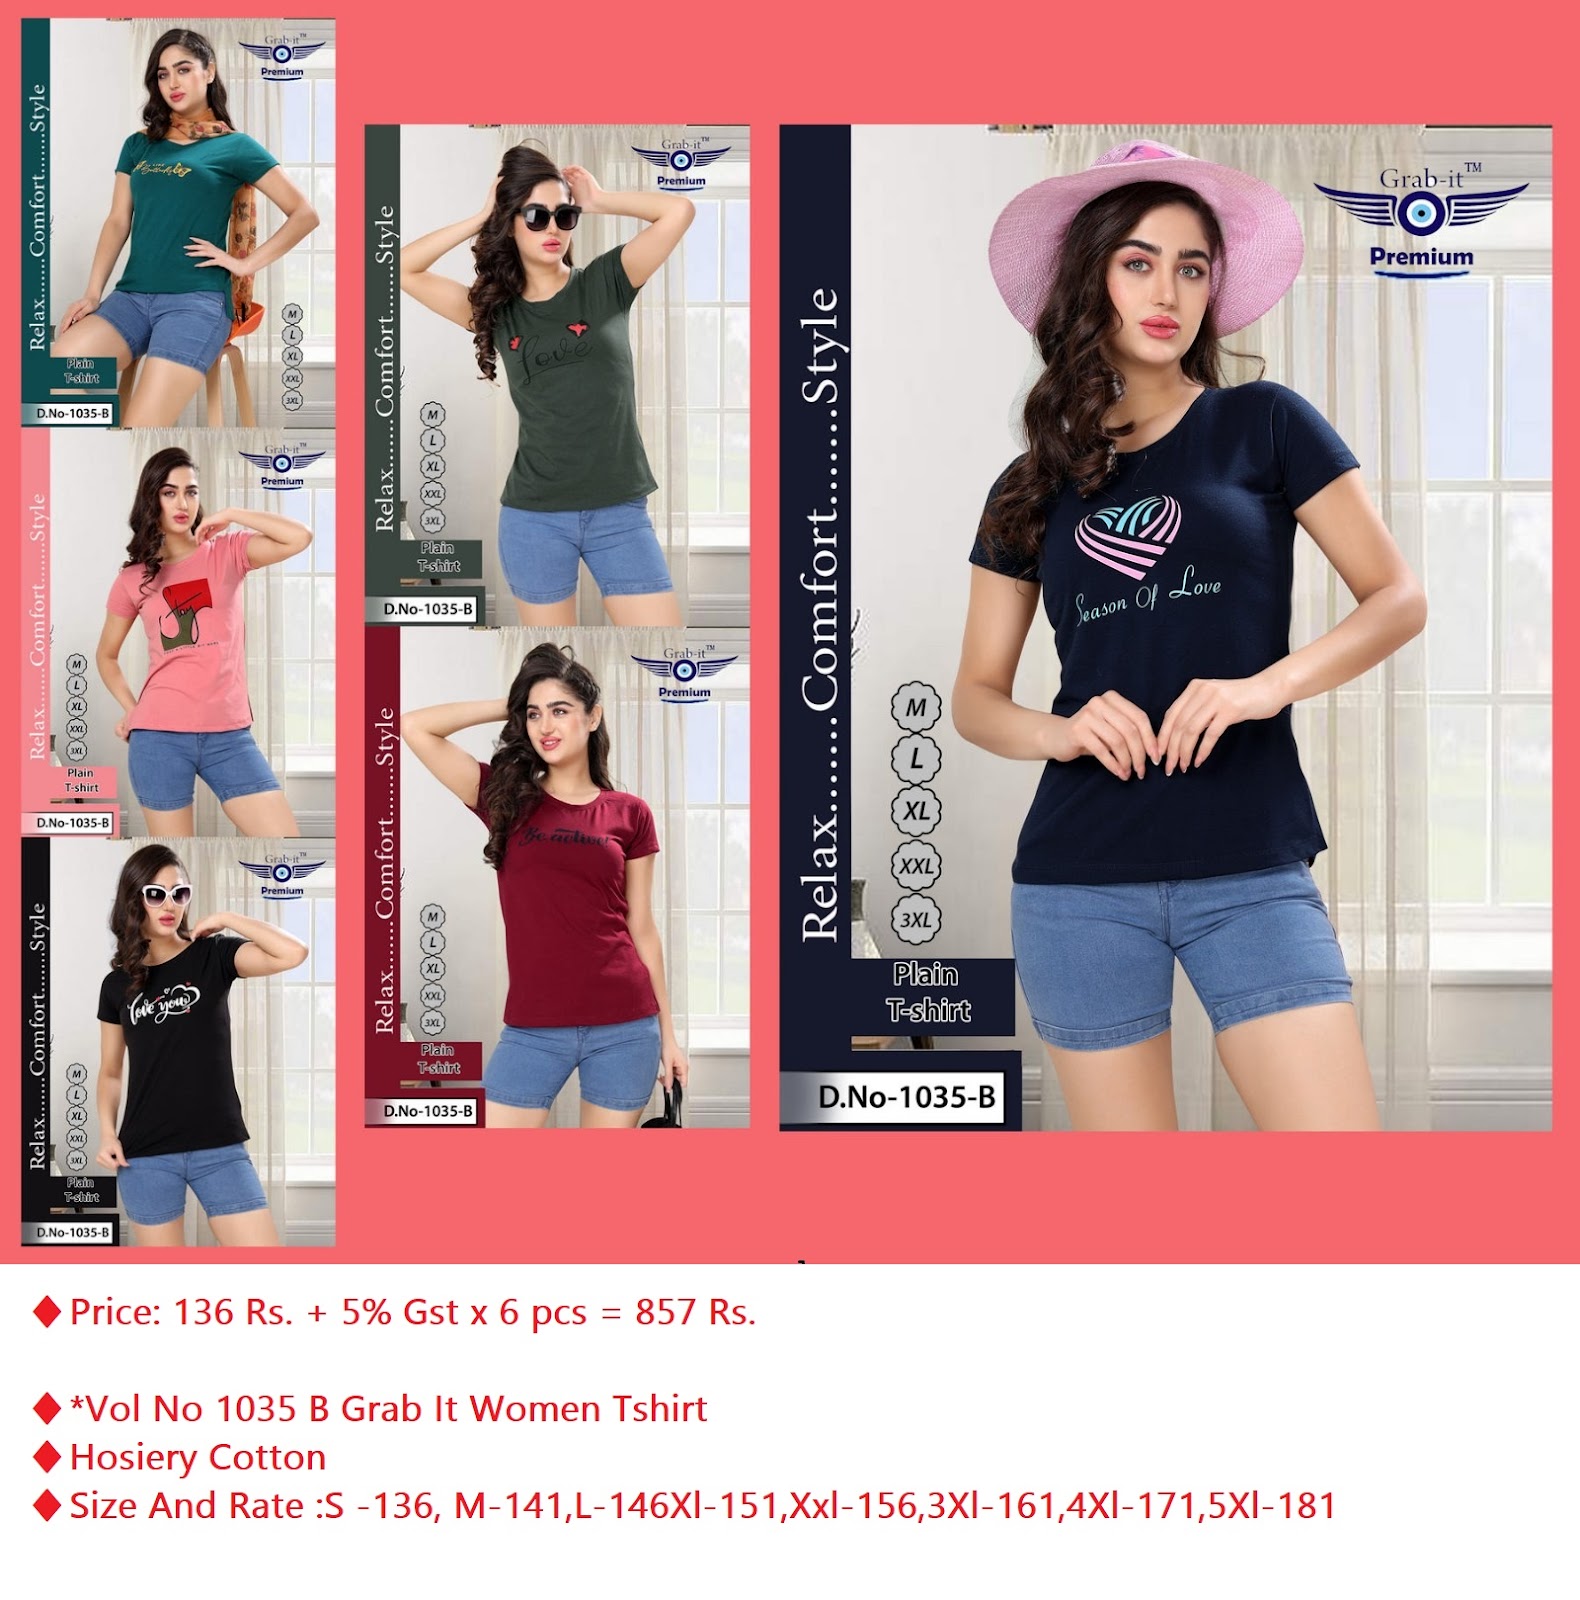 Grab It Vol No 1035 B Girls Tshirt Catalog Lowest Price